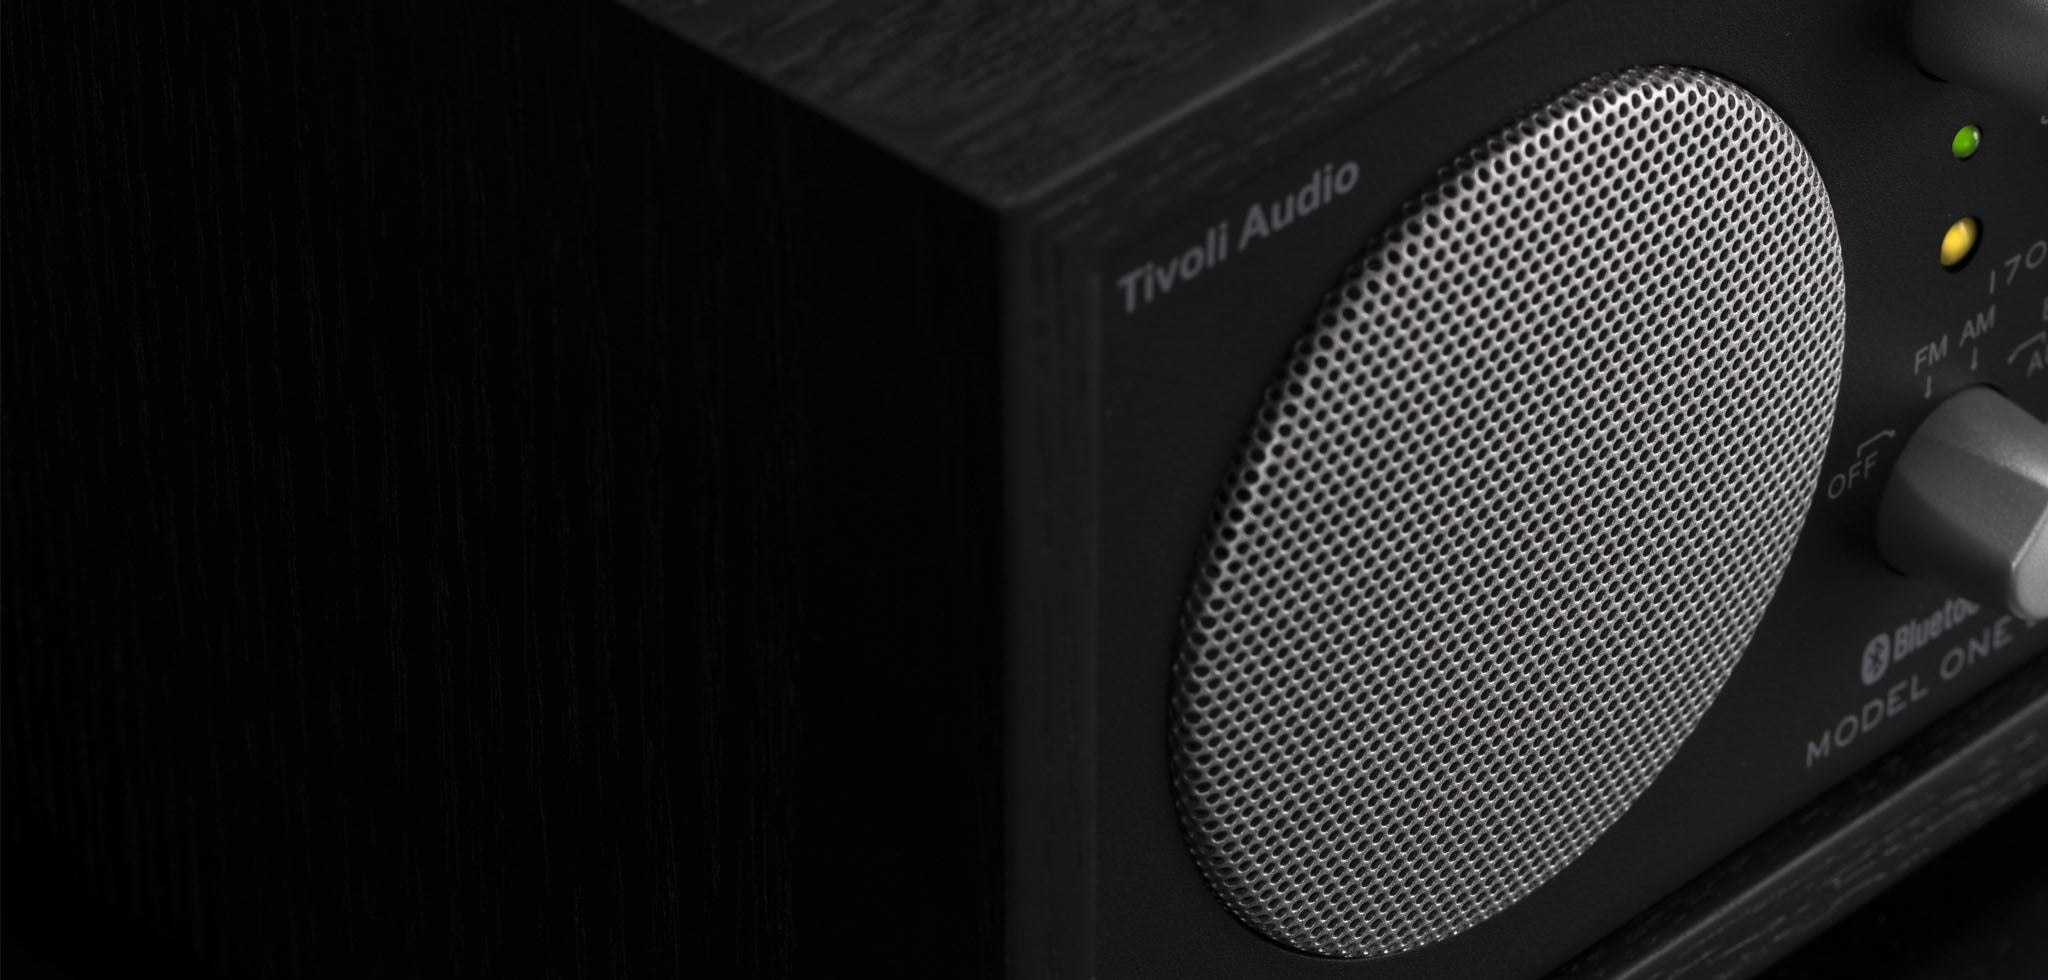 Tivoli Audio Con-X Bundles